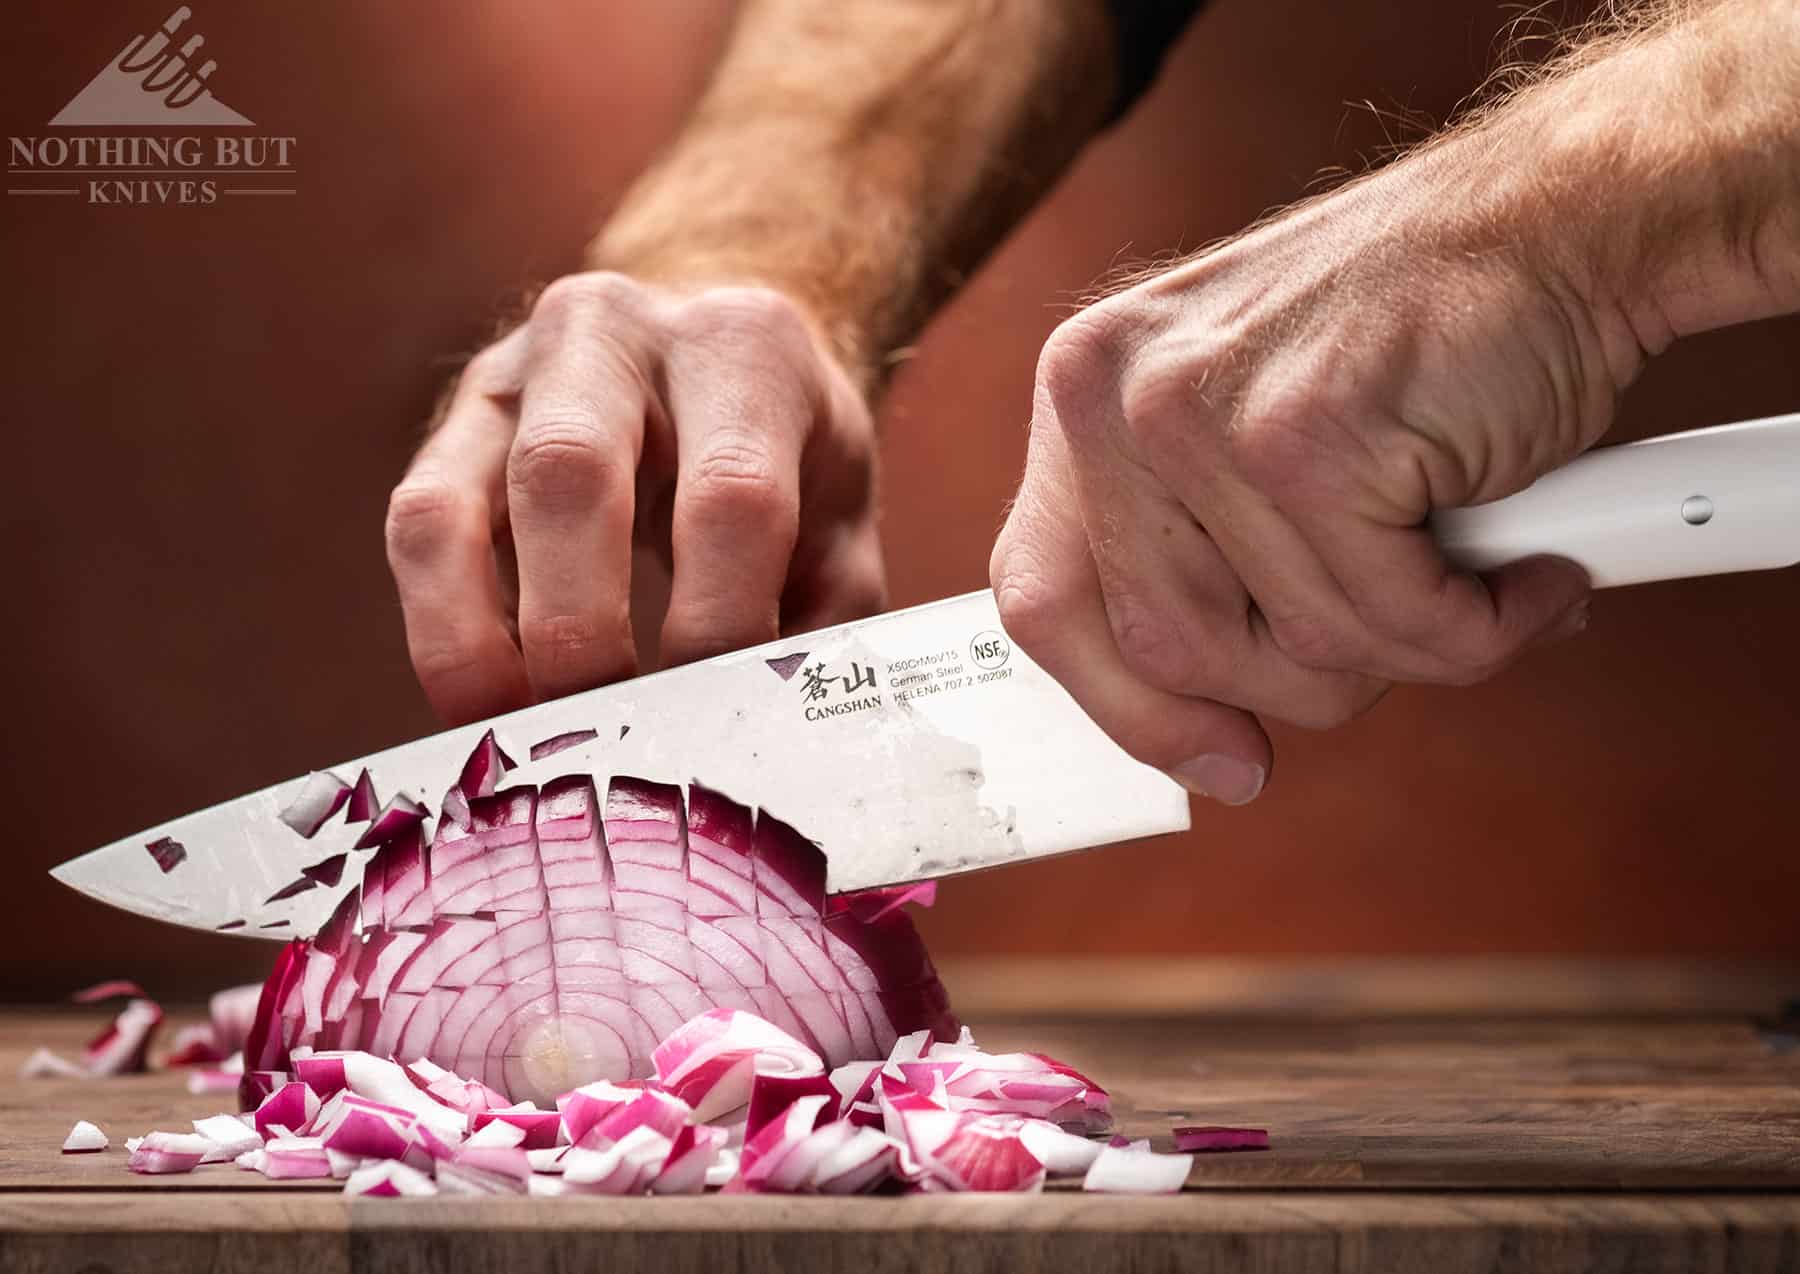 Best Kitchen Knife Sets Under $200 - 2023 Update